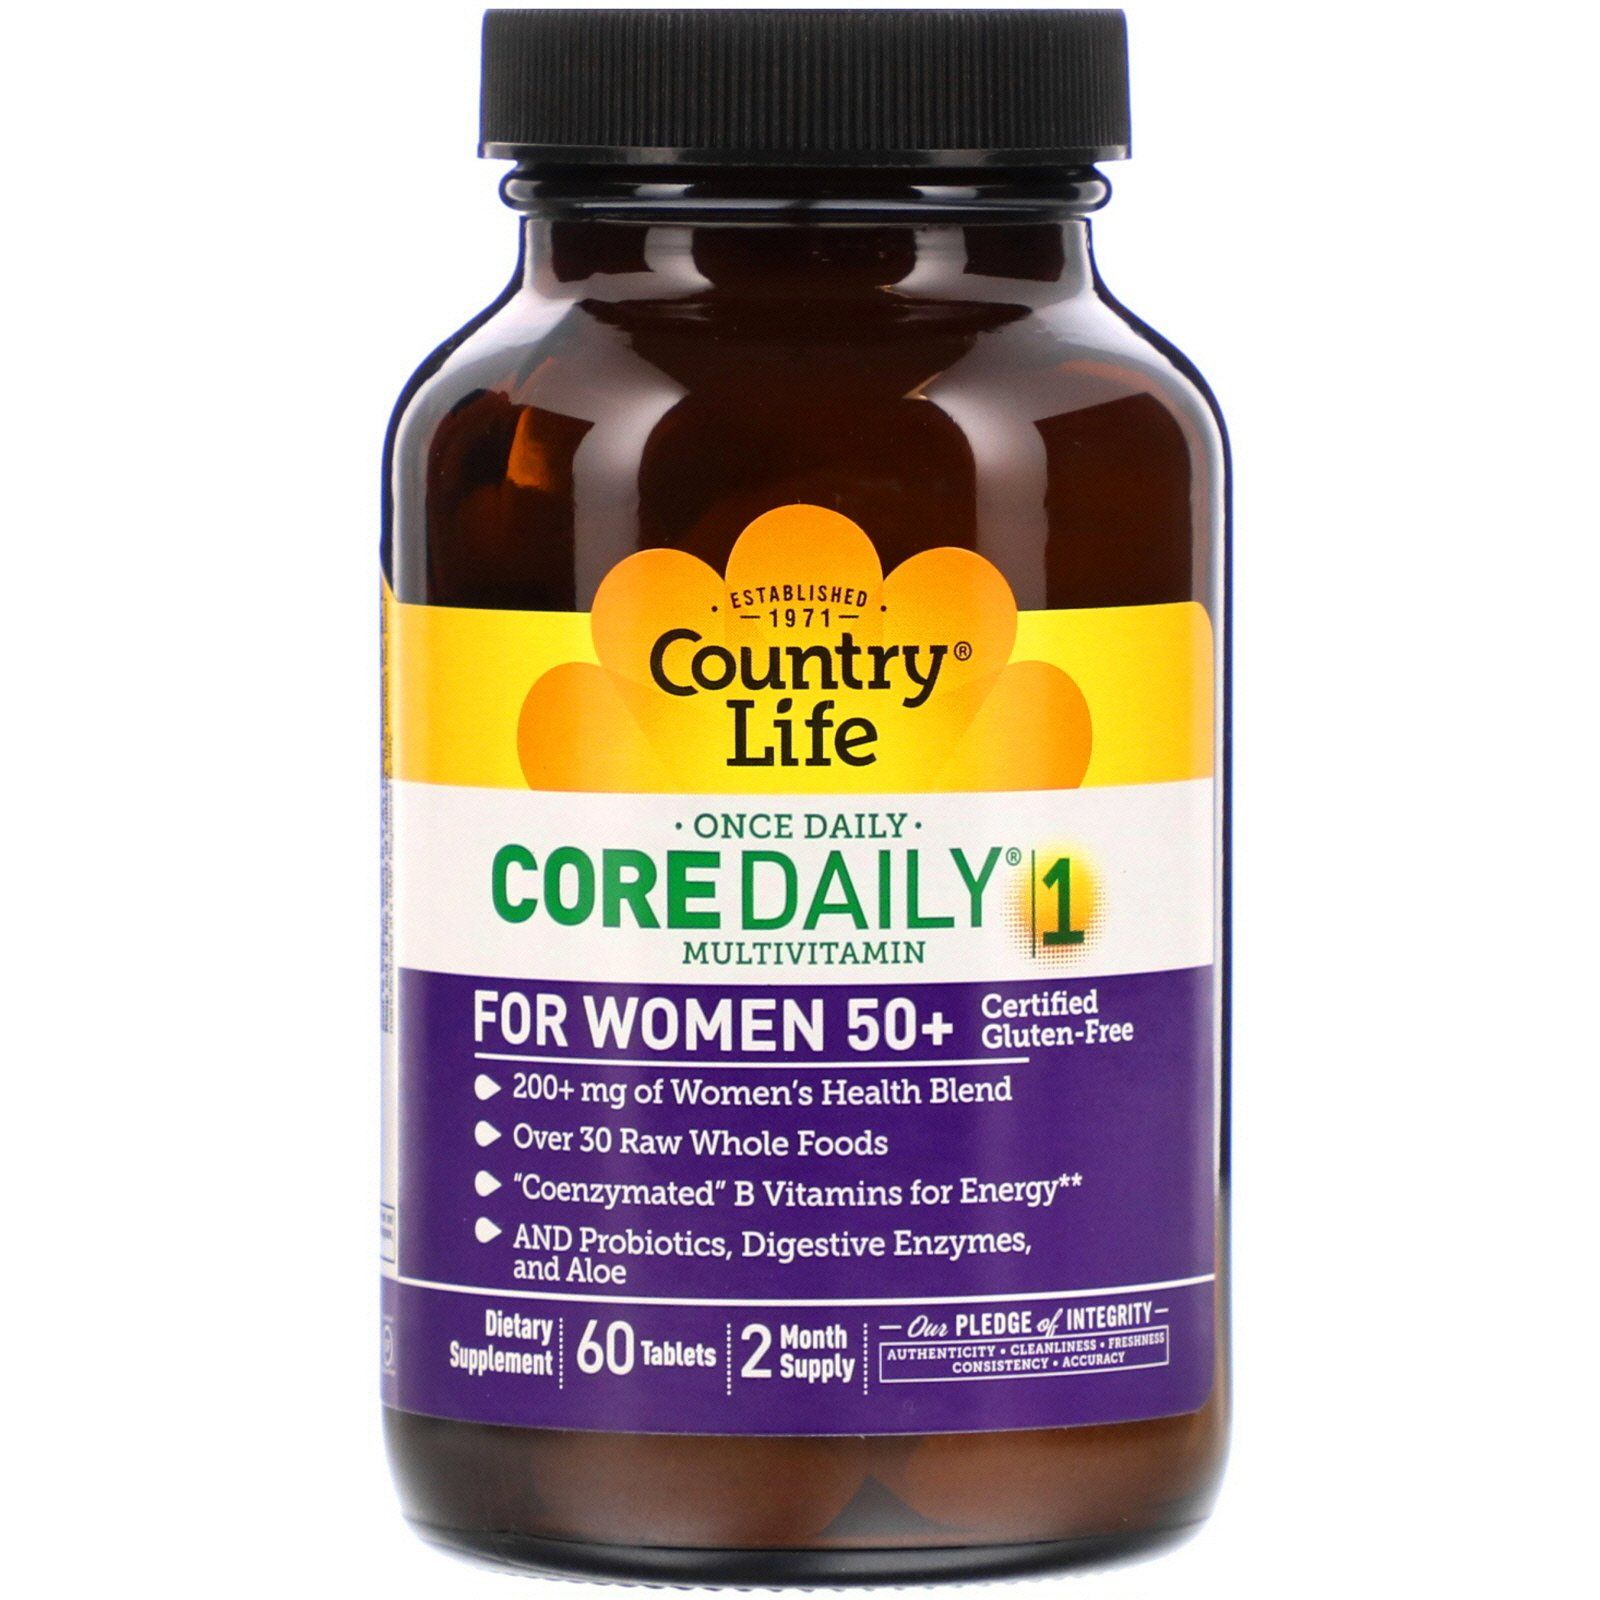 Витамин отзывы покупателей и врачей. Country Life Core Daily-1 Multivitamin for women 50+. Country Life, мультивитамины Core Daily-1 (women). One Daily Multivitamin women 50+. Country Life, Core Daily-, мультивитамины для мужчин.